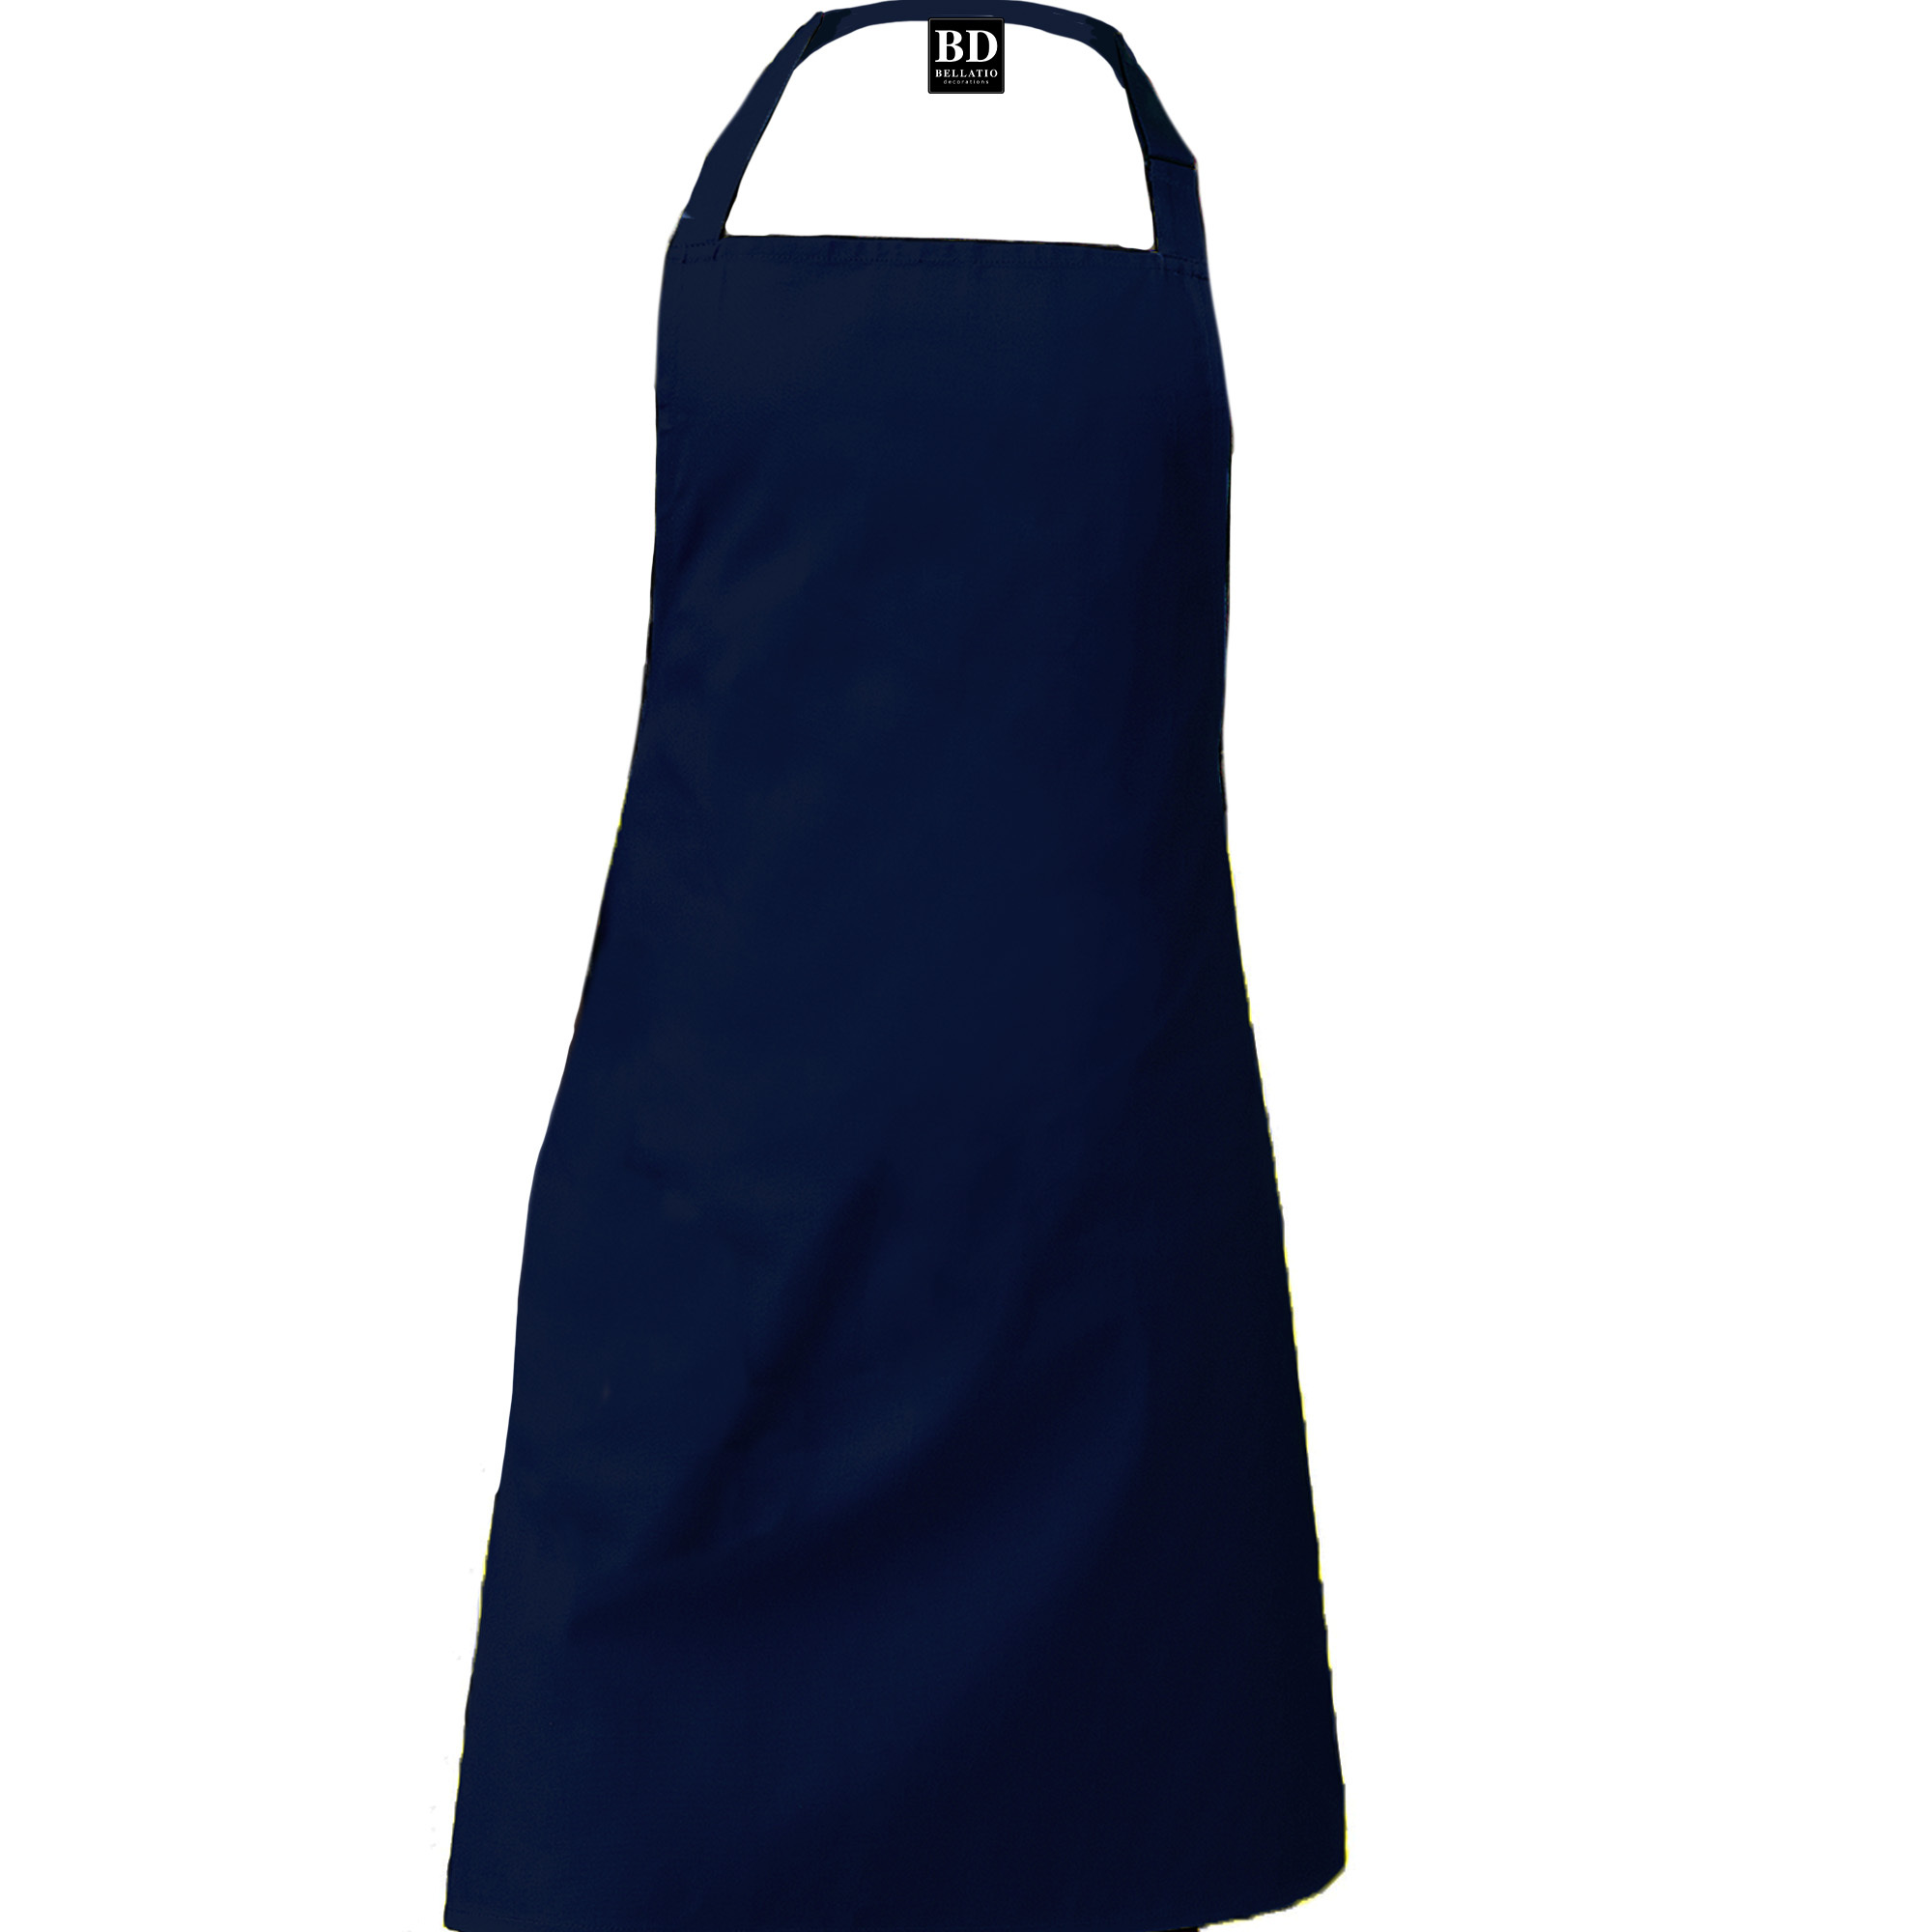 BBQ schort Master chef navy blauw voor dames